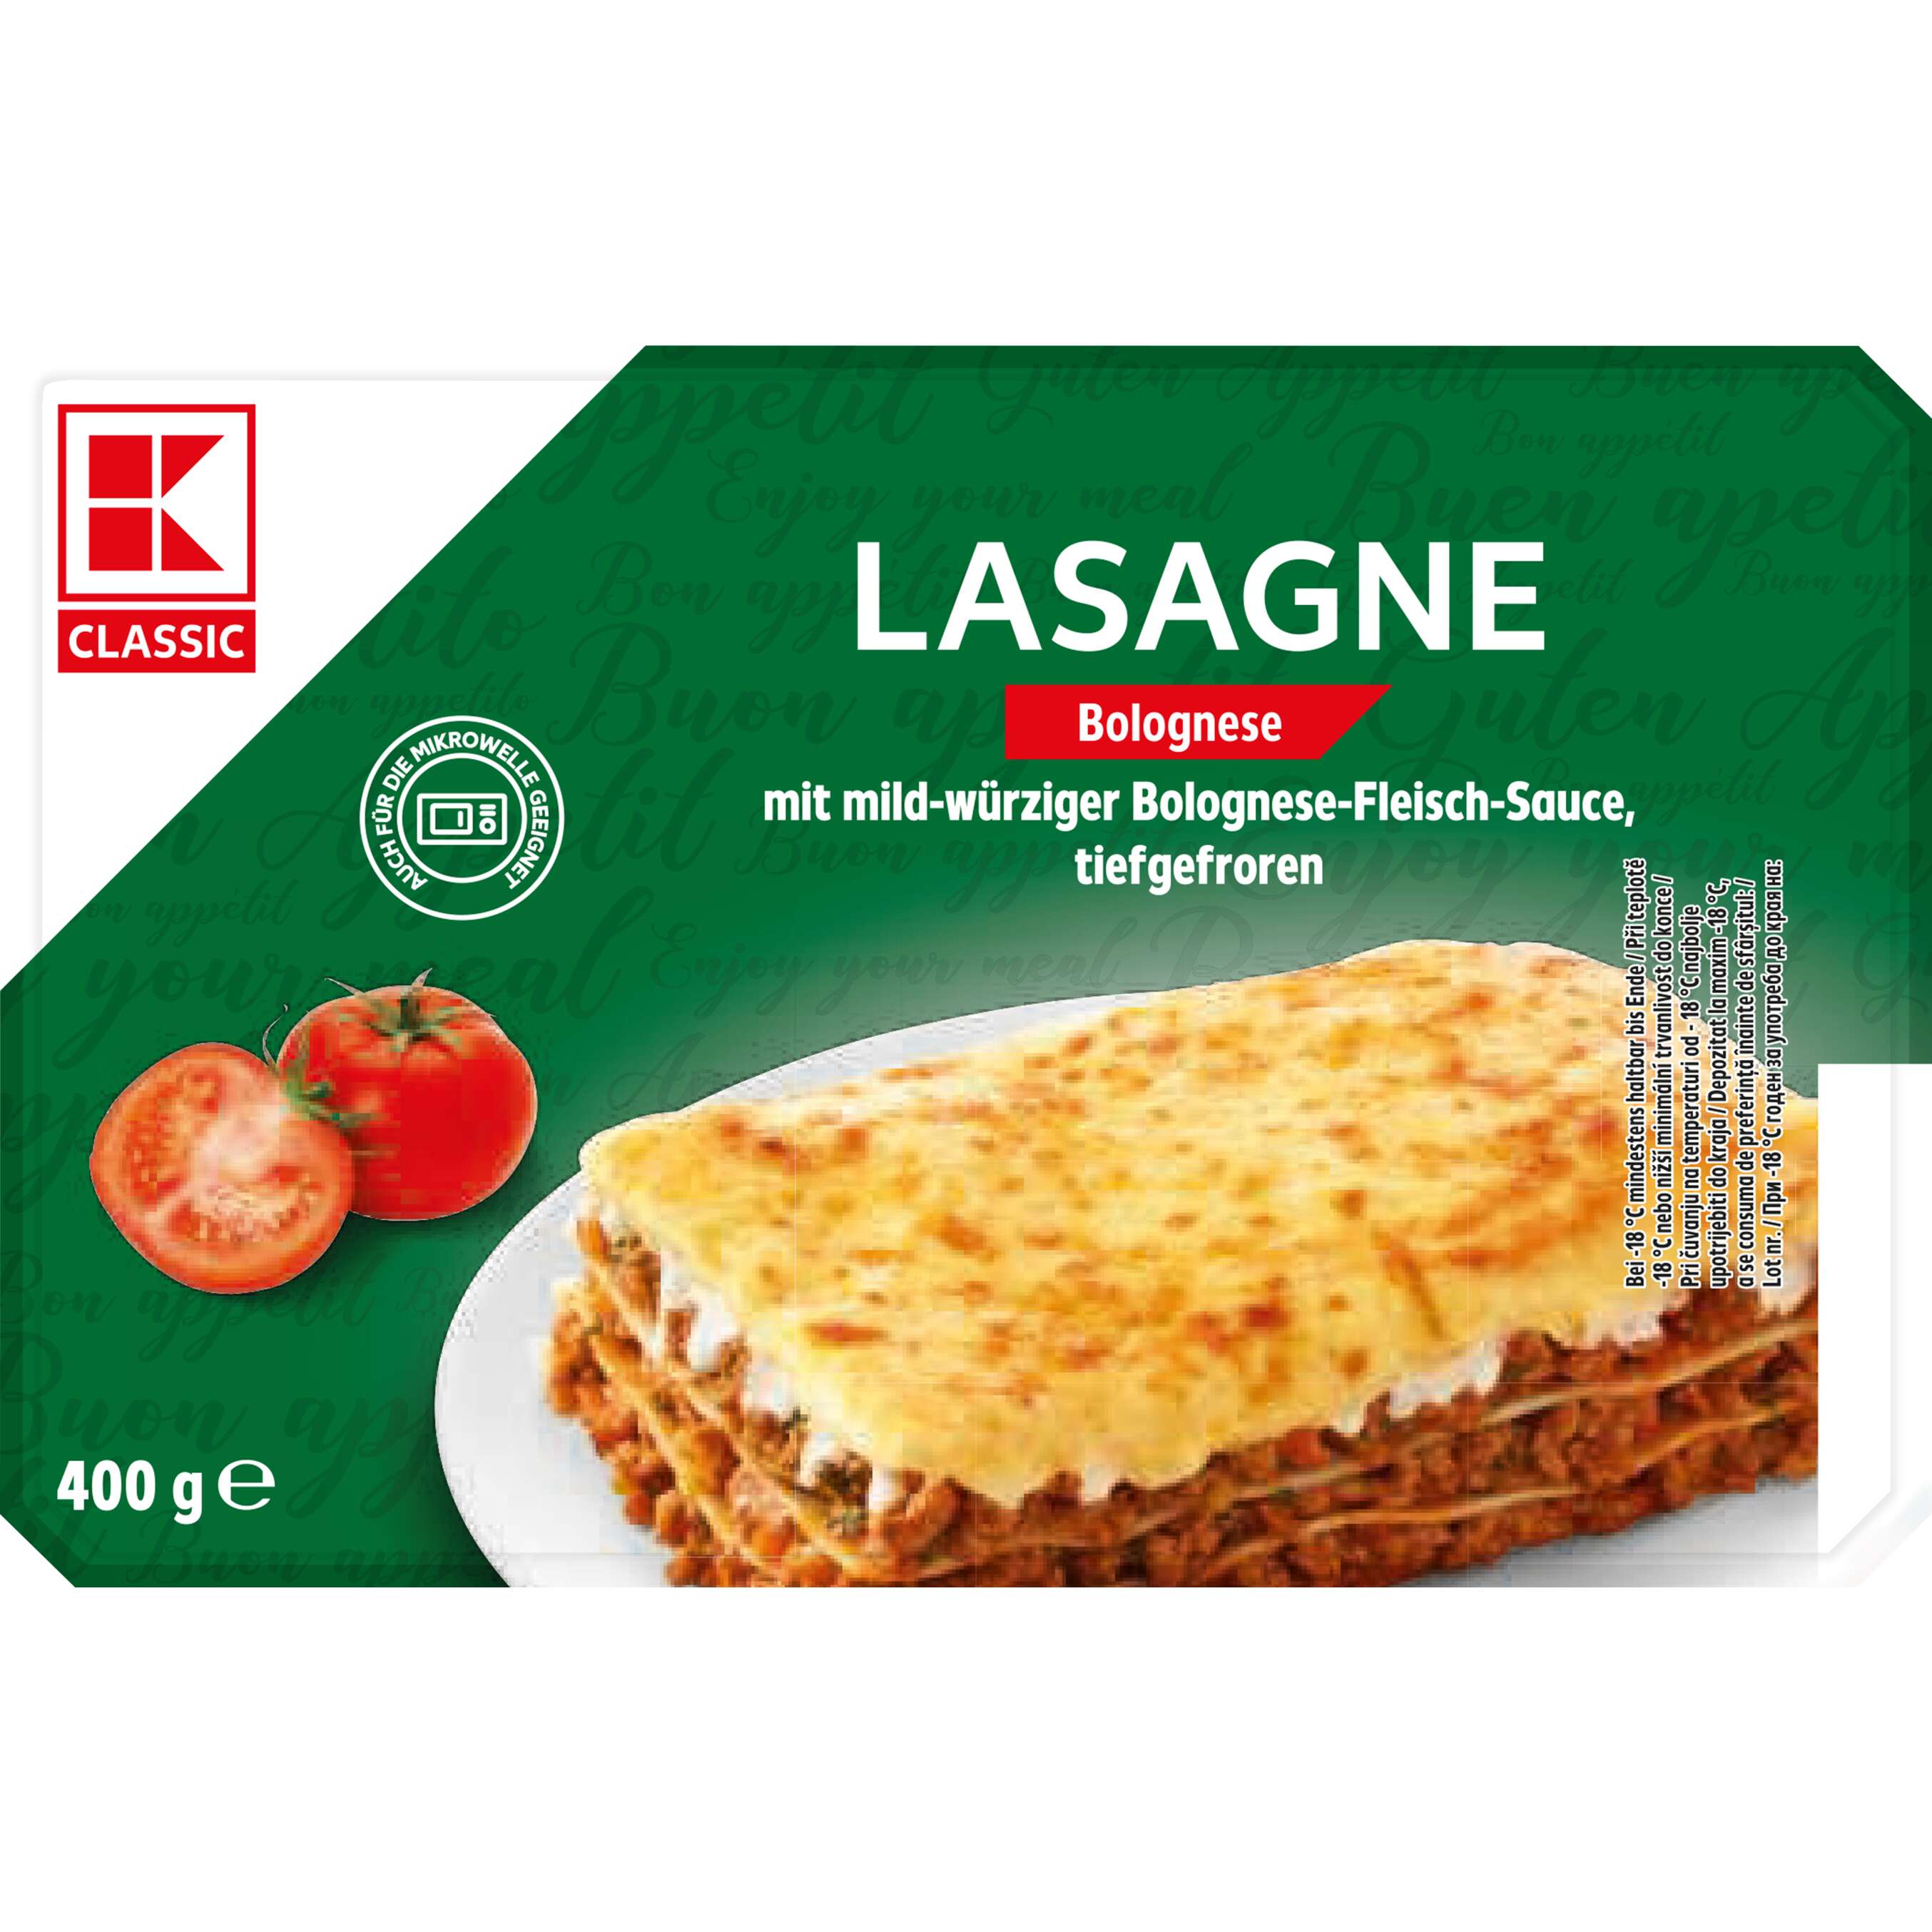 Zobrazit nabídku Lasagne Bolognese 